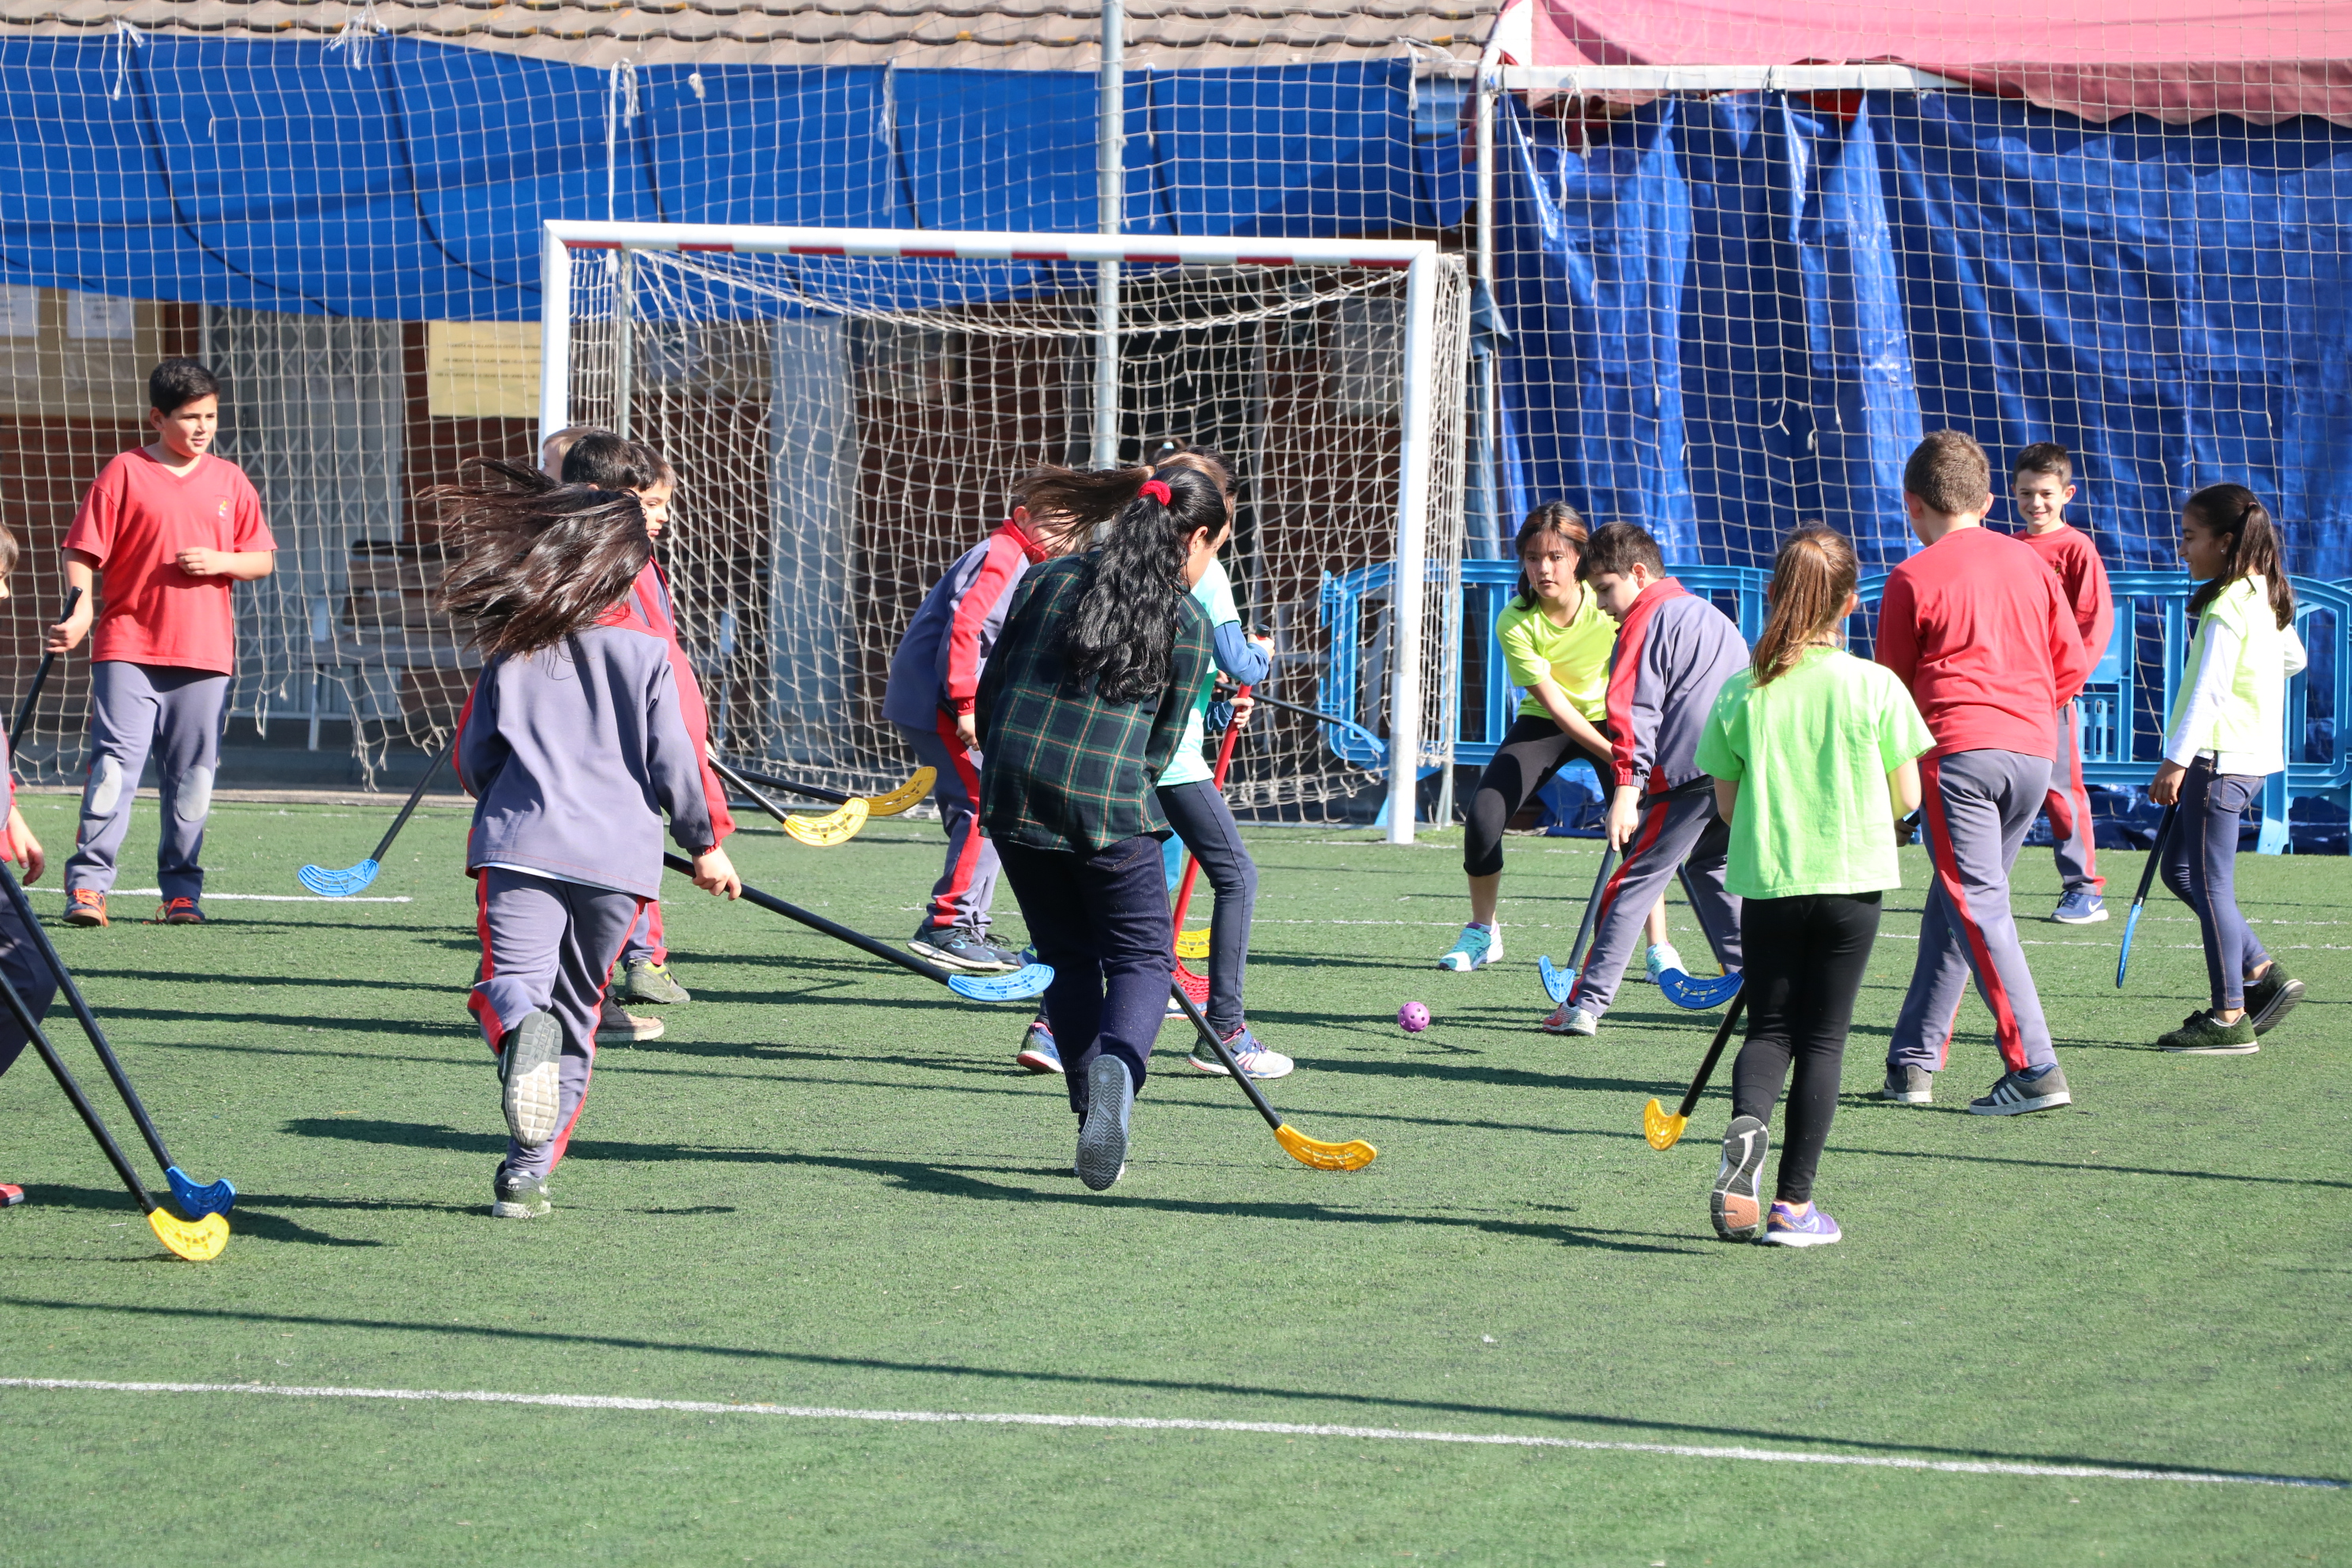 L'Ajuntament ha organitzat avui una jornada multiesportiva escolar